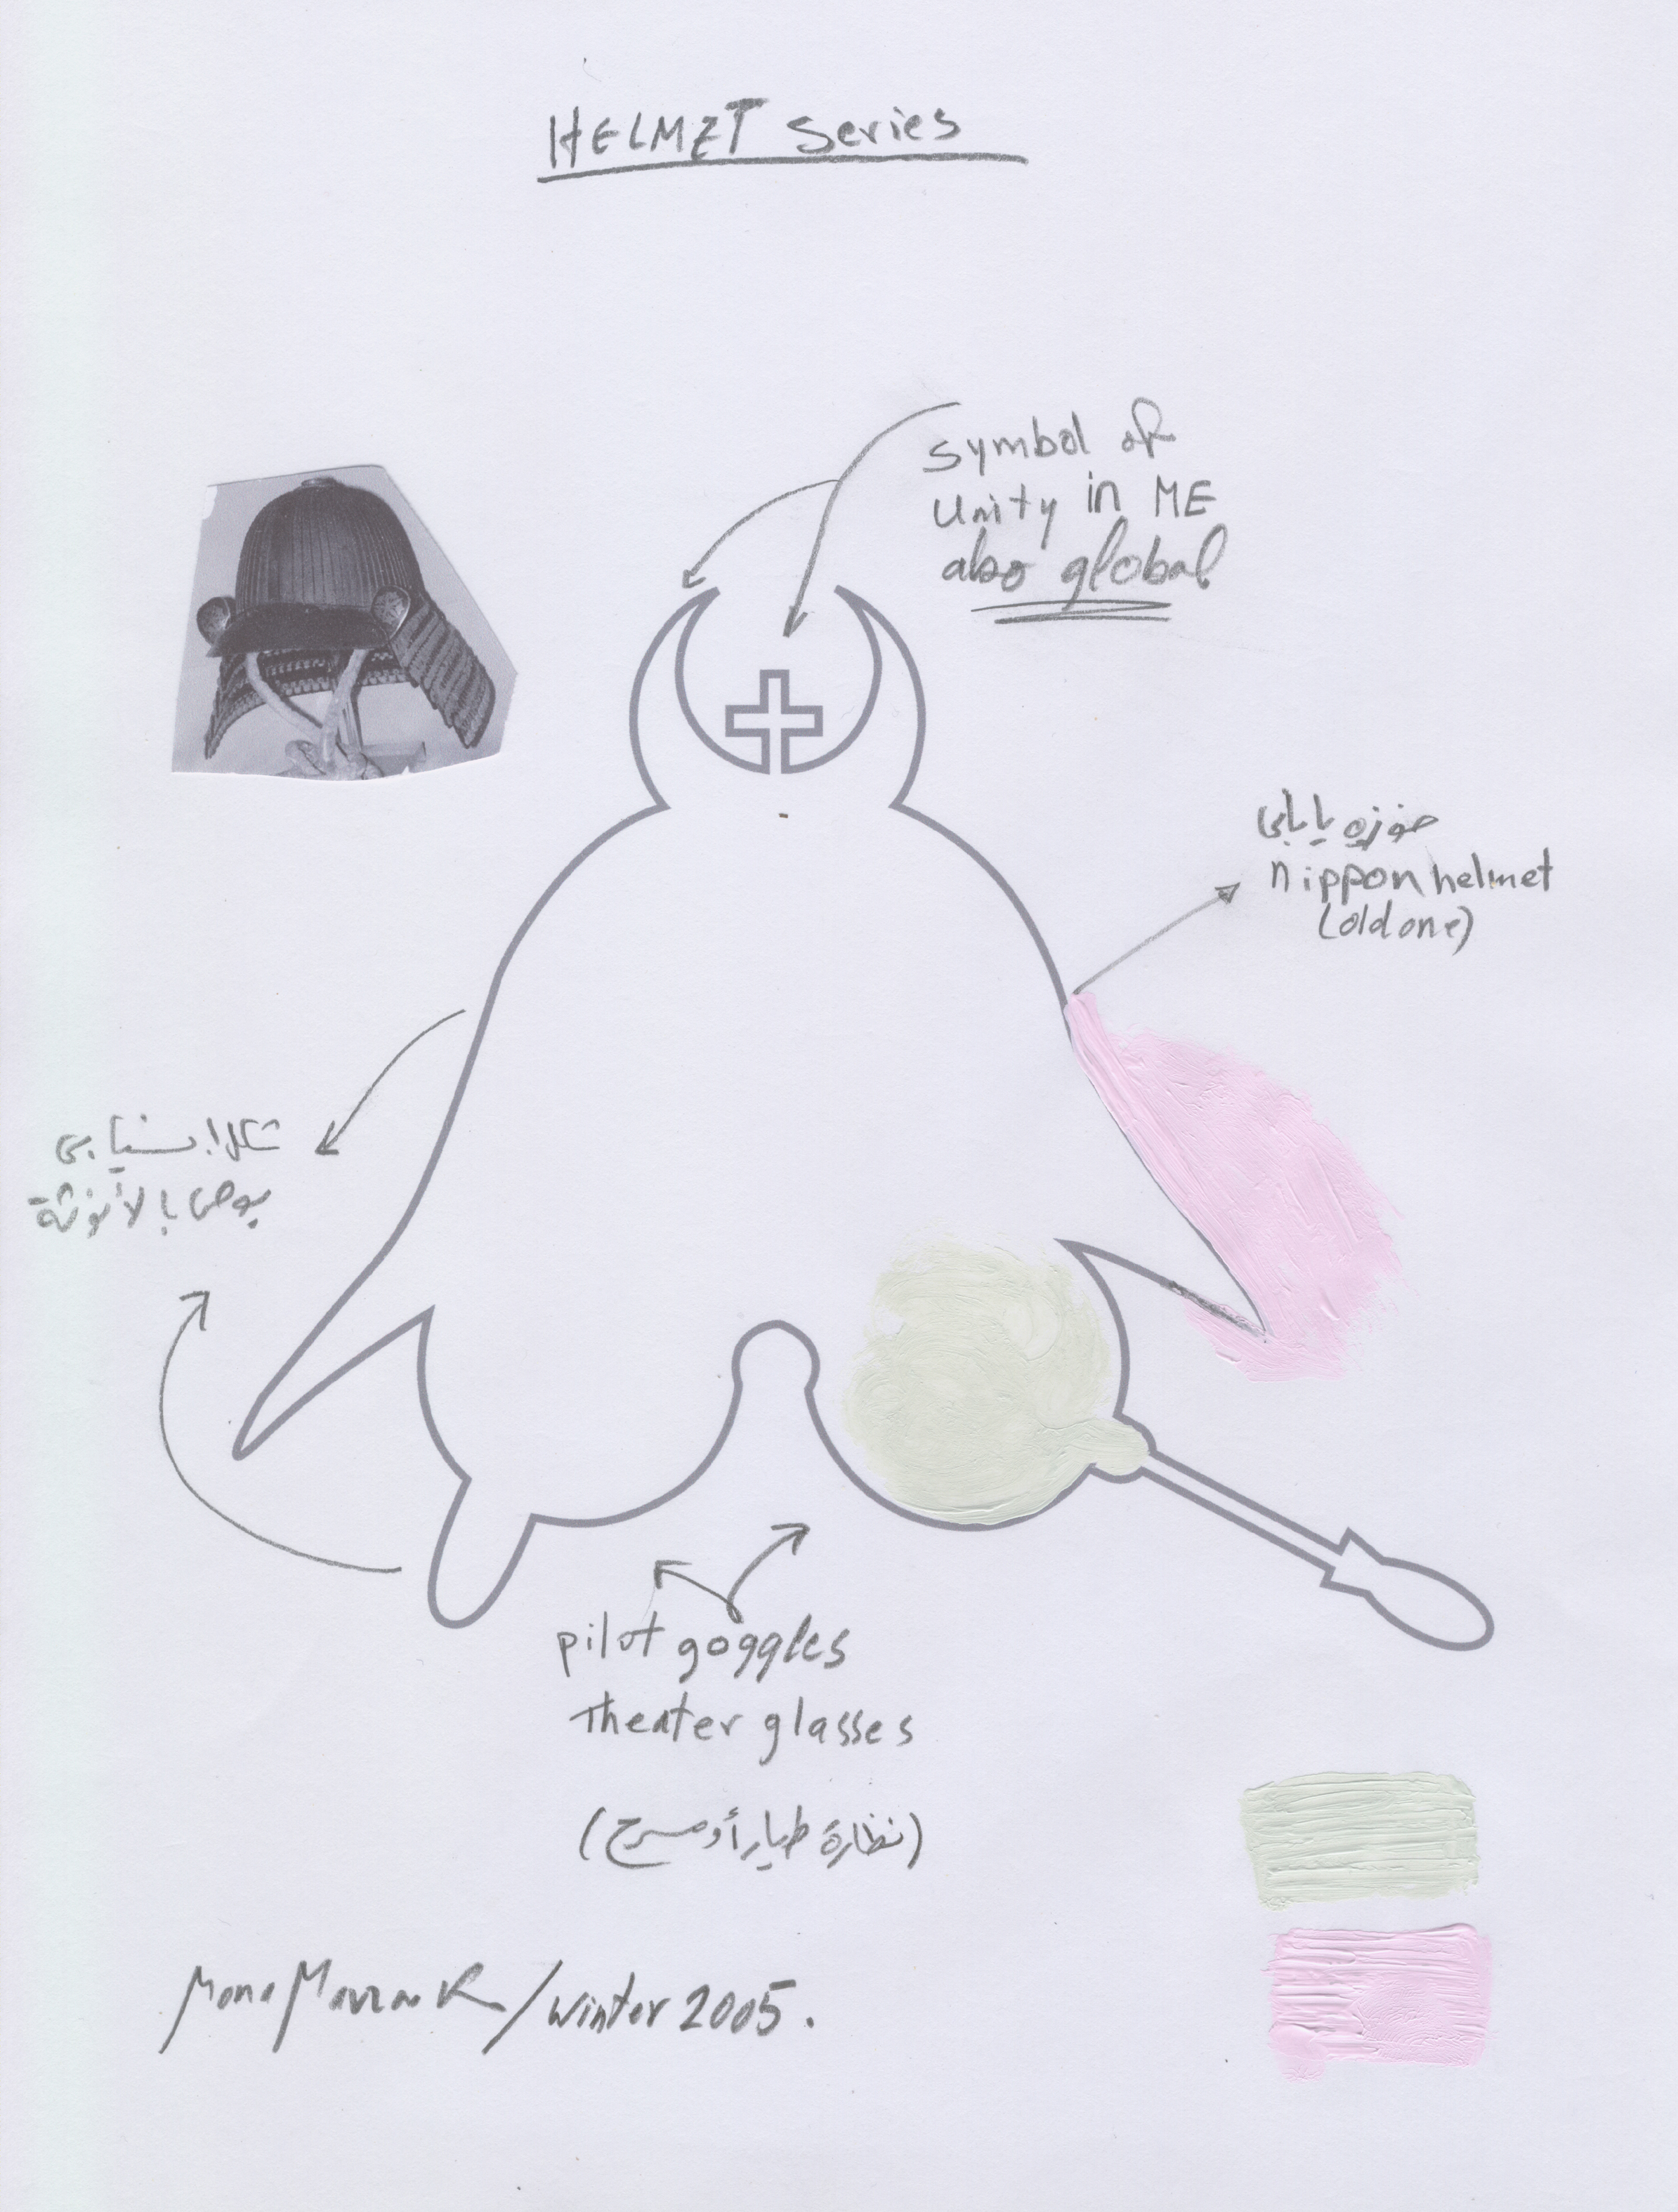  Helmet 4 Sketch, 2005, A4 